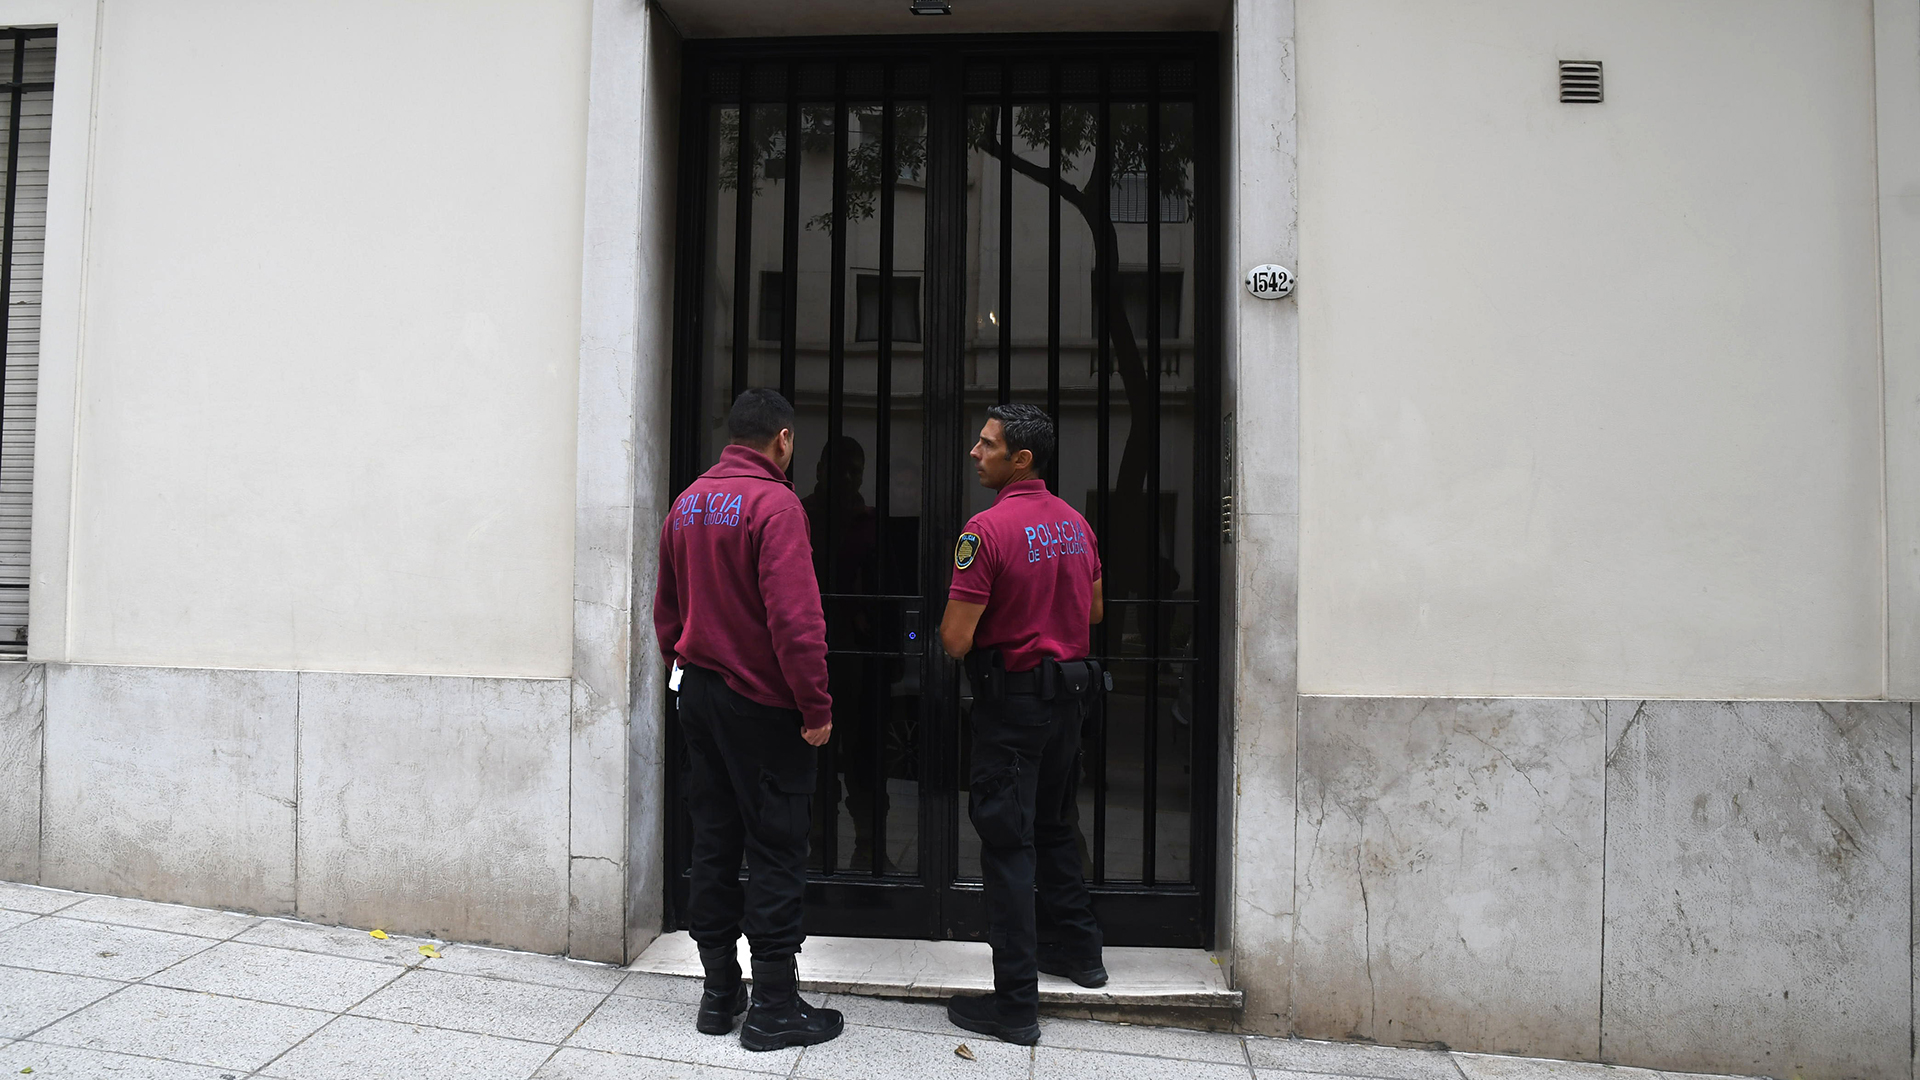 El allanamiento se realizó en el sexto piso del edificio de la calle Libertad 1542, el domicilio particular del imputado Sáenz Valiente 